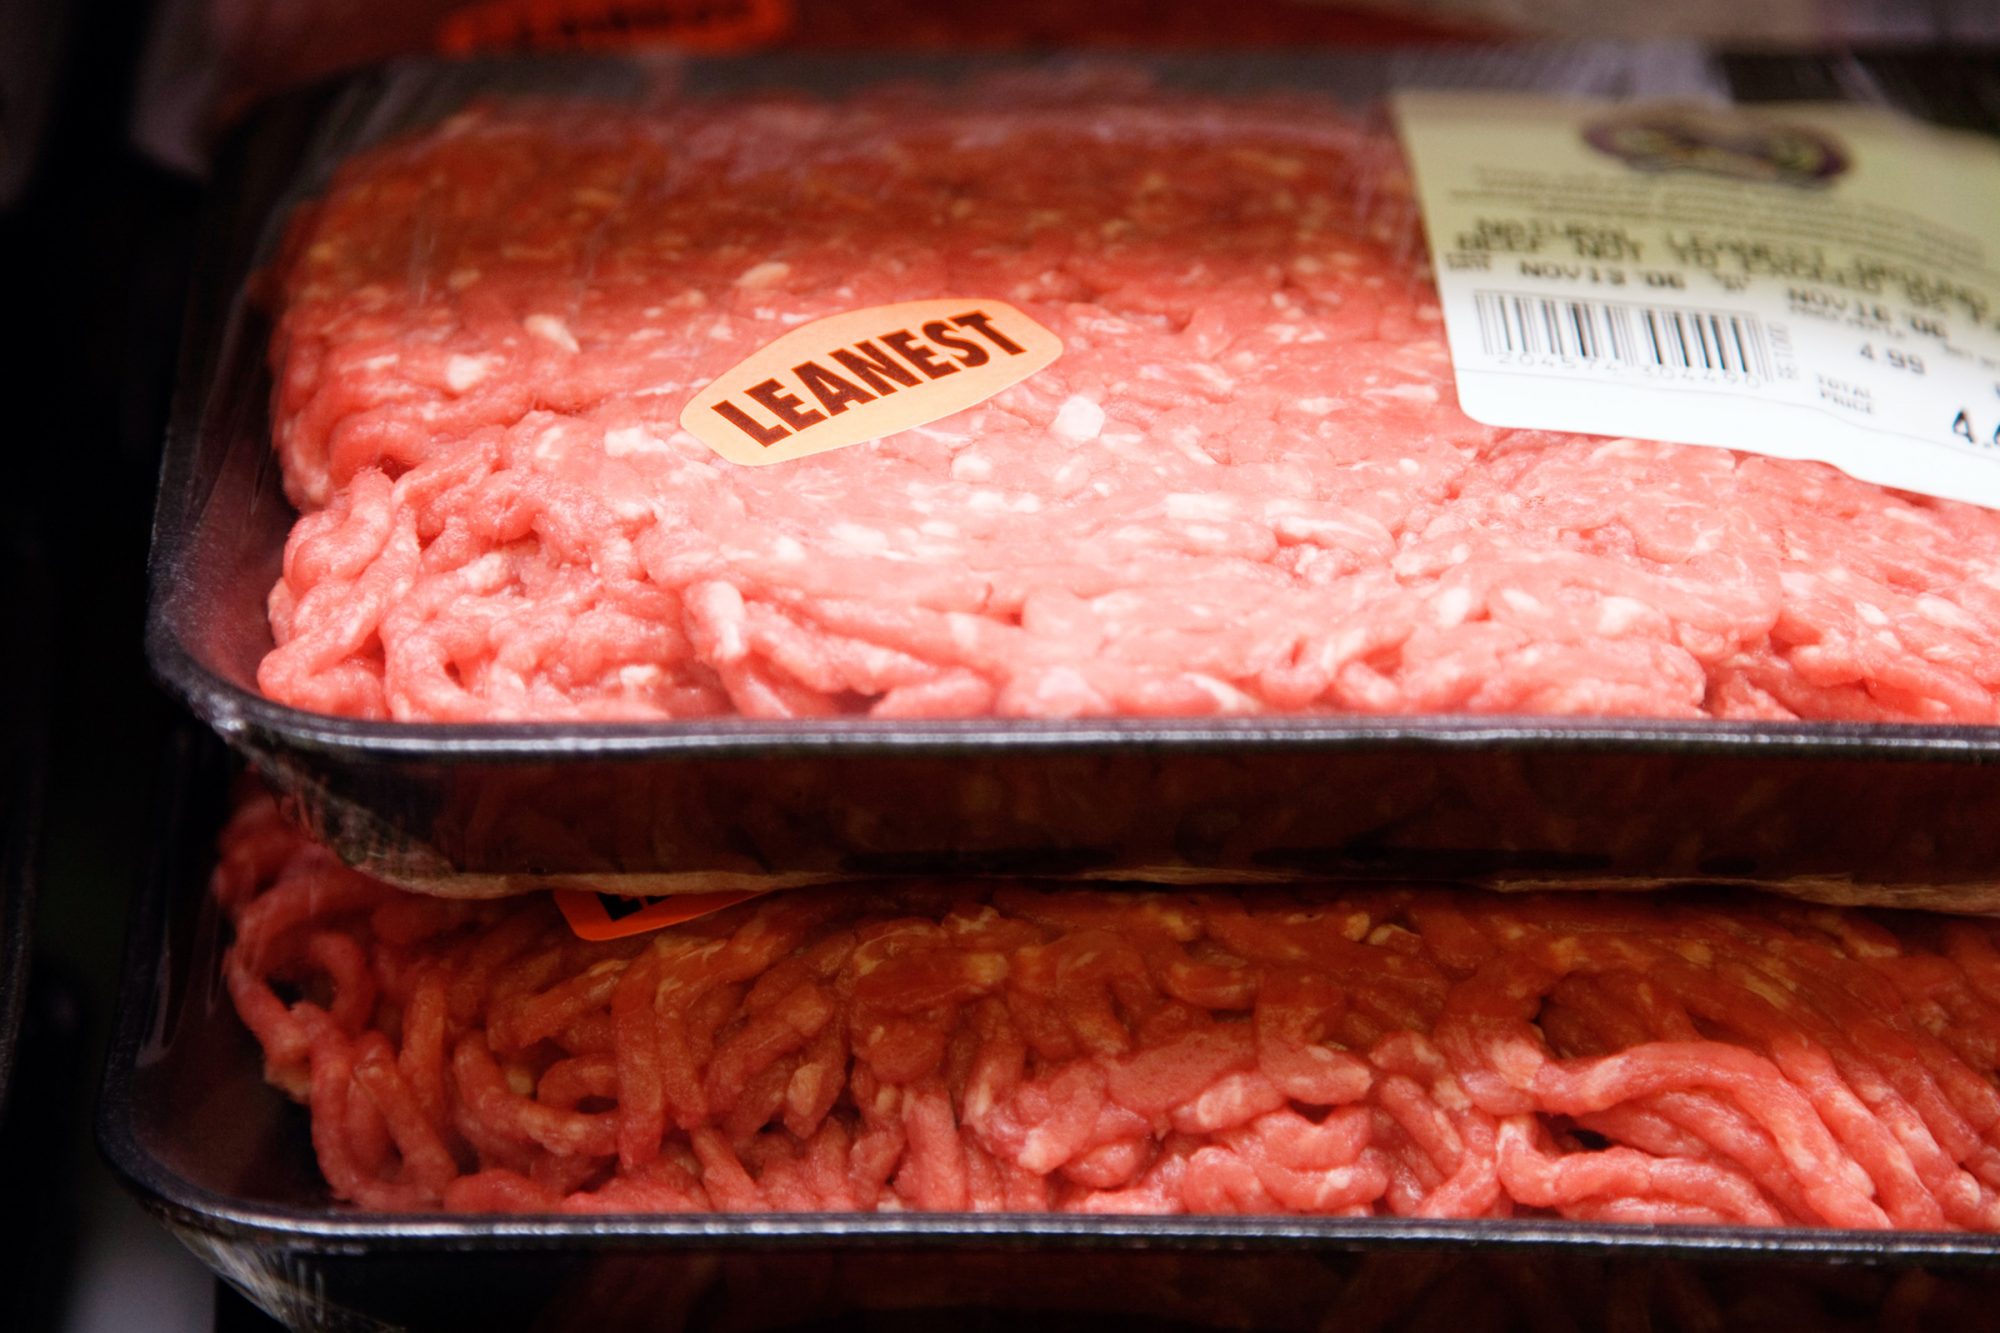 Ground beef in supermarket, close-up